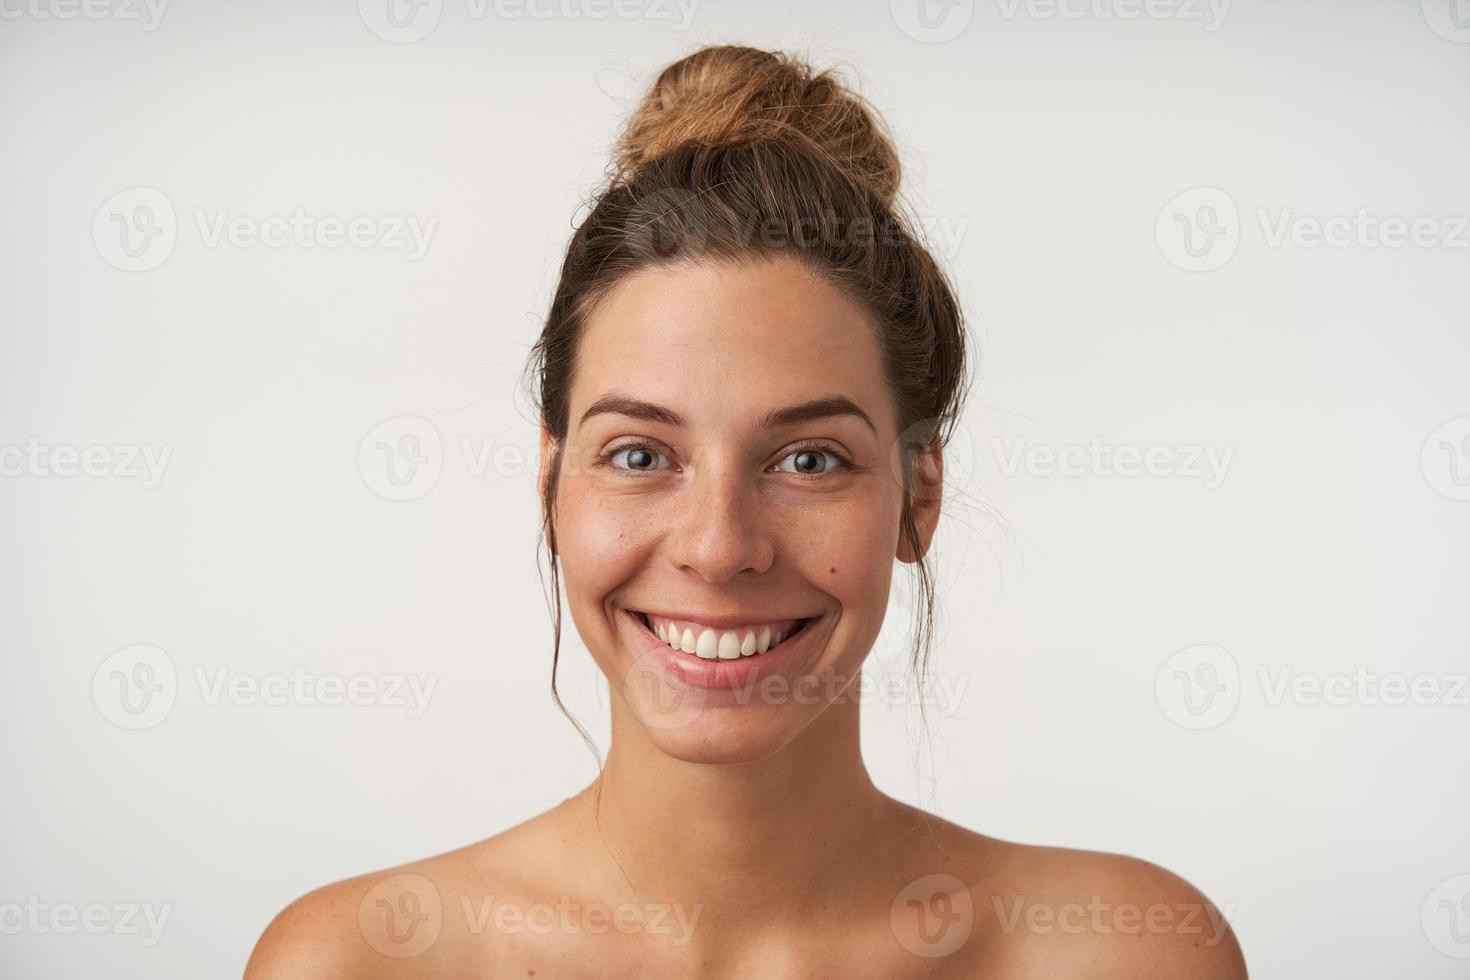 mulher jovem e bonita feliz sem maquiagem sobre fundo branco, sorrindo alegremente para a câmera com coque alto na cabeça, conceito de emoções positivas foto